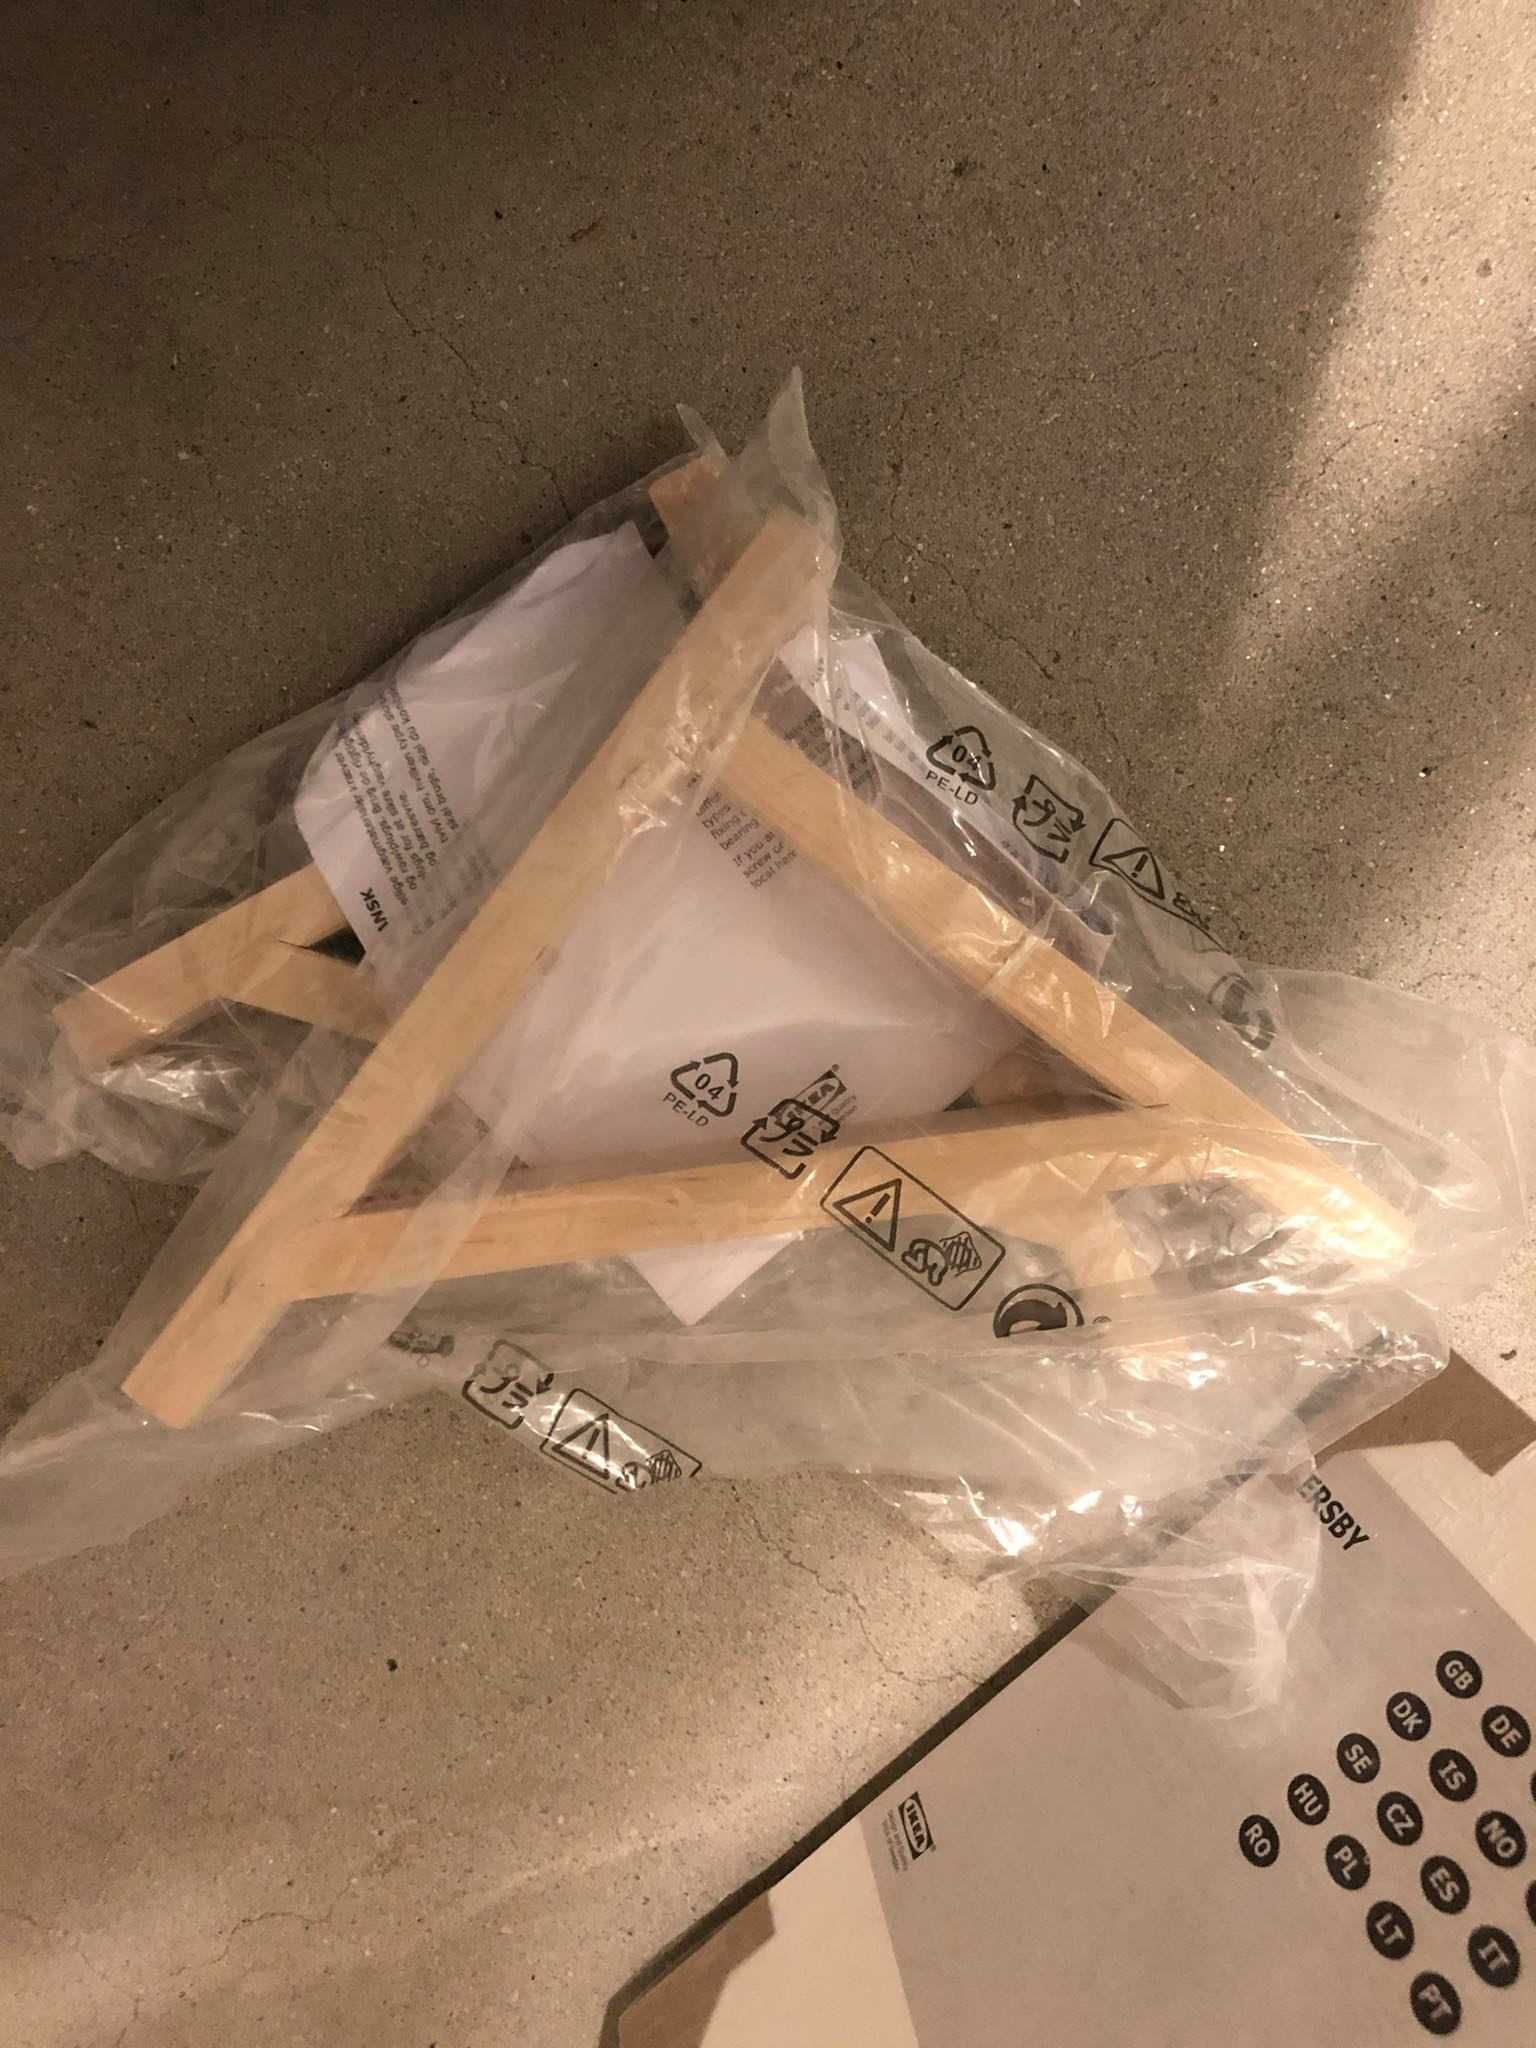 Prateleira branca com 2 suportes de madeira, IKEA (ainda embalado)